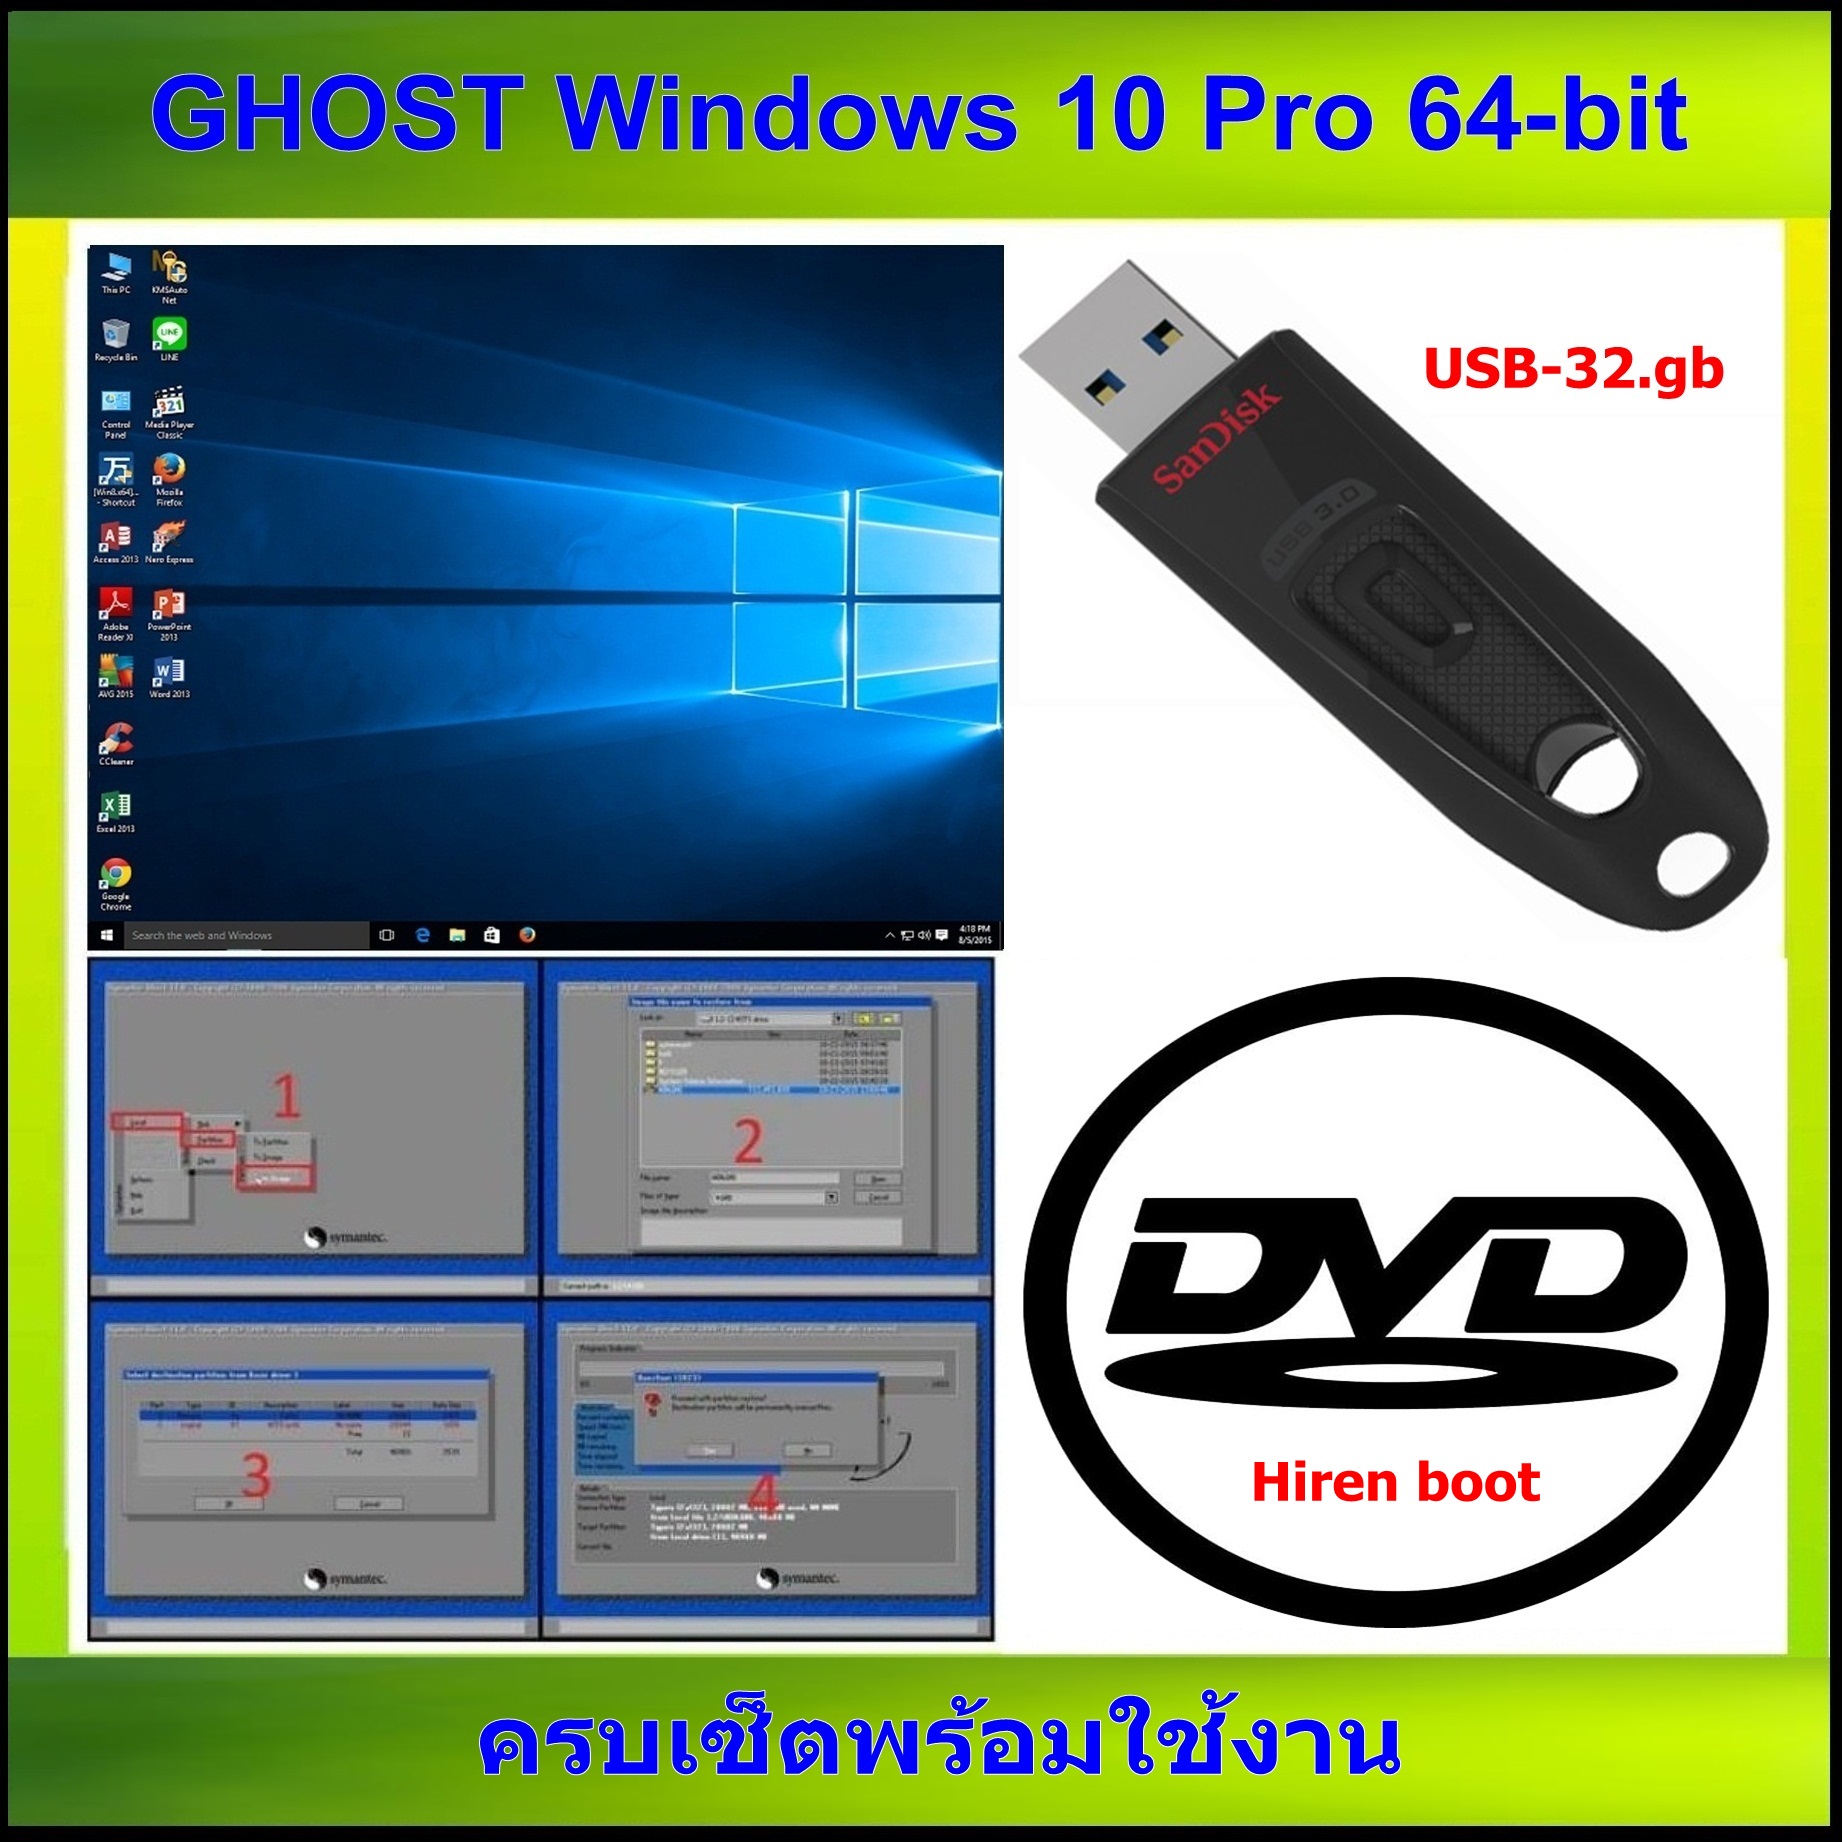 ghost-windows 10 pro 64-bit เมนู-ภาษาอังกฤษ ครบเซ็ตพร้อมใช้งาน dvd-hiren boot